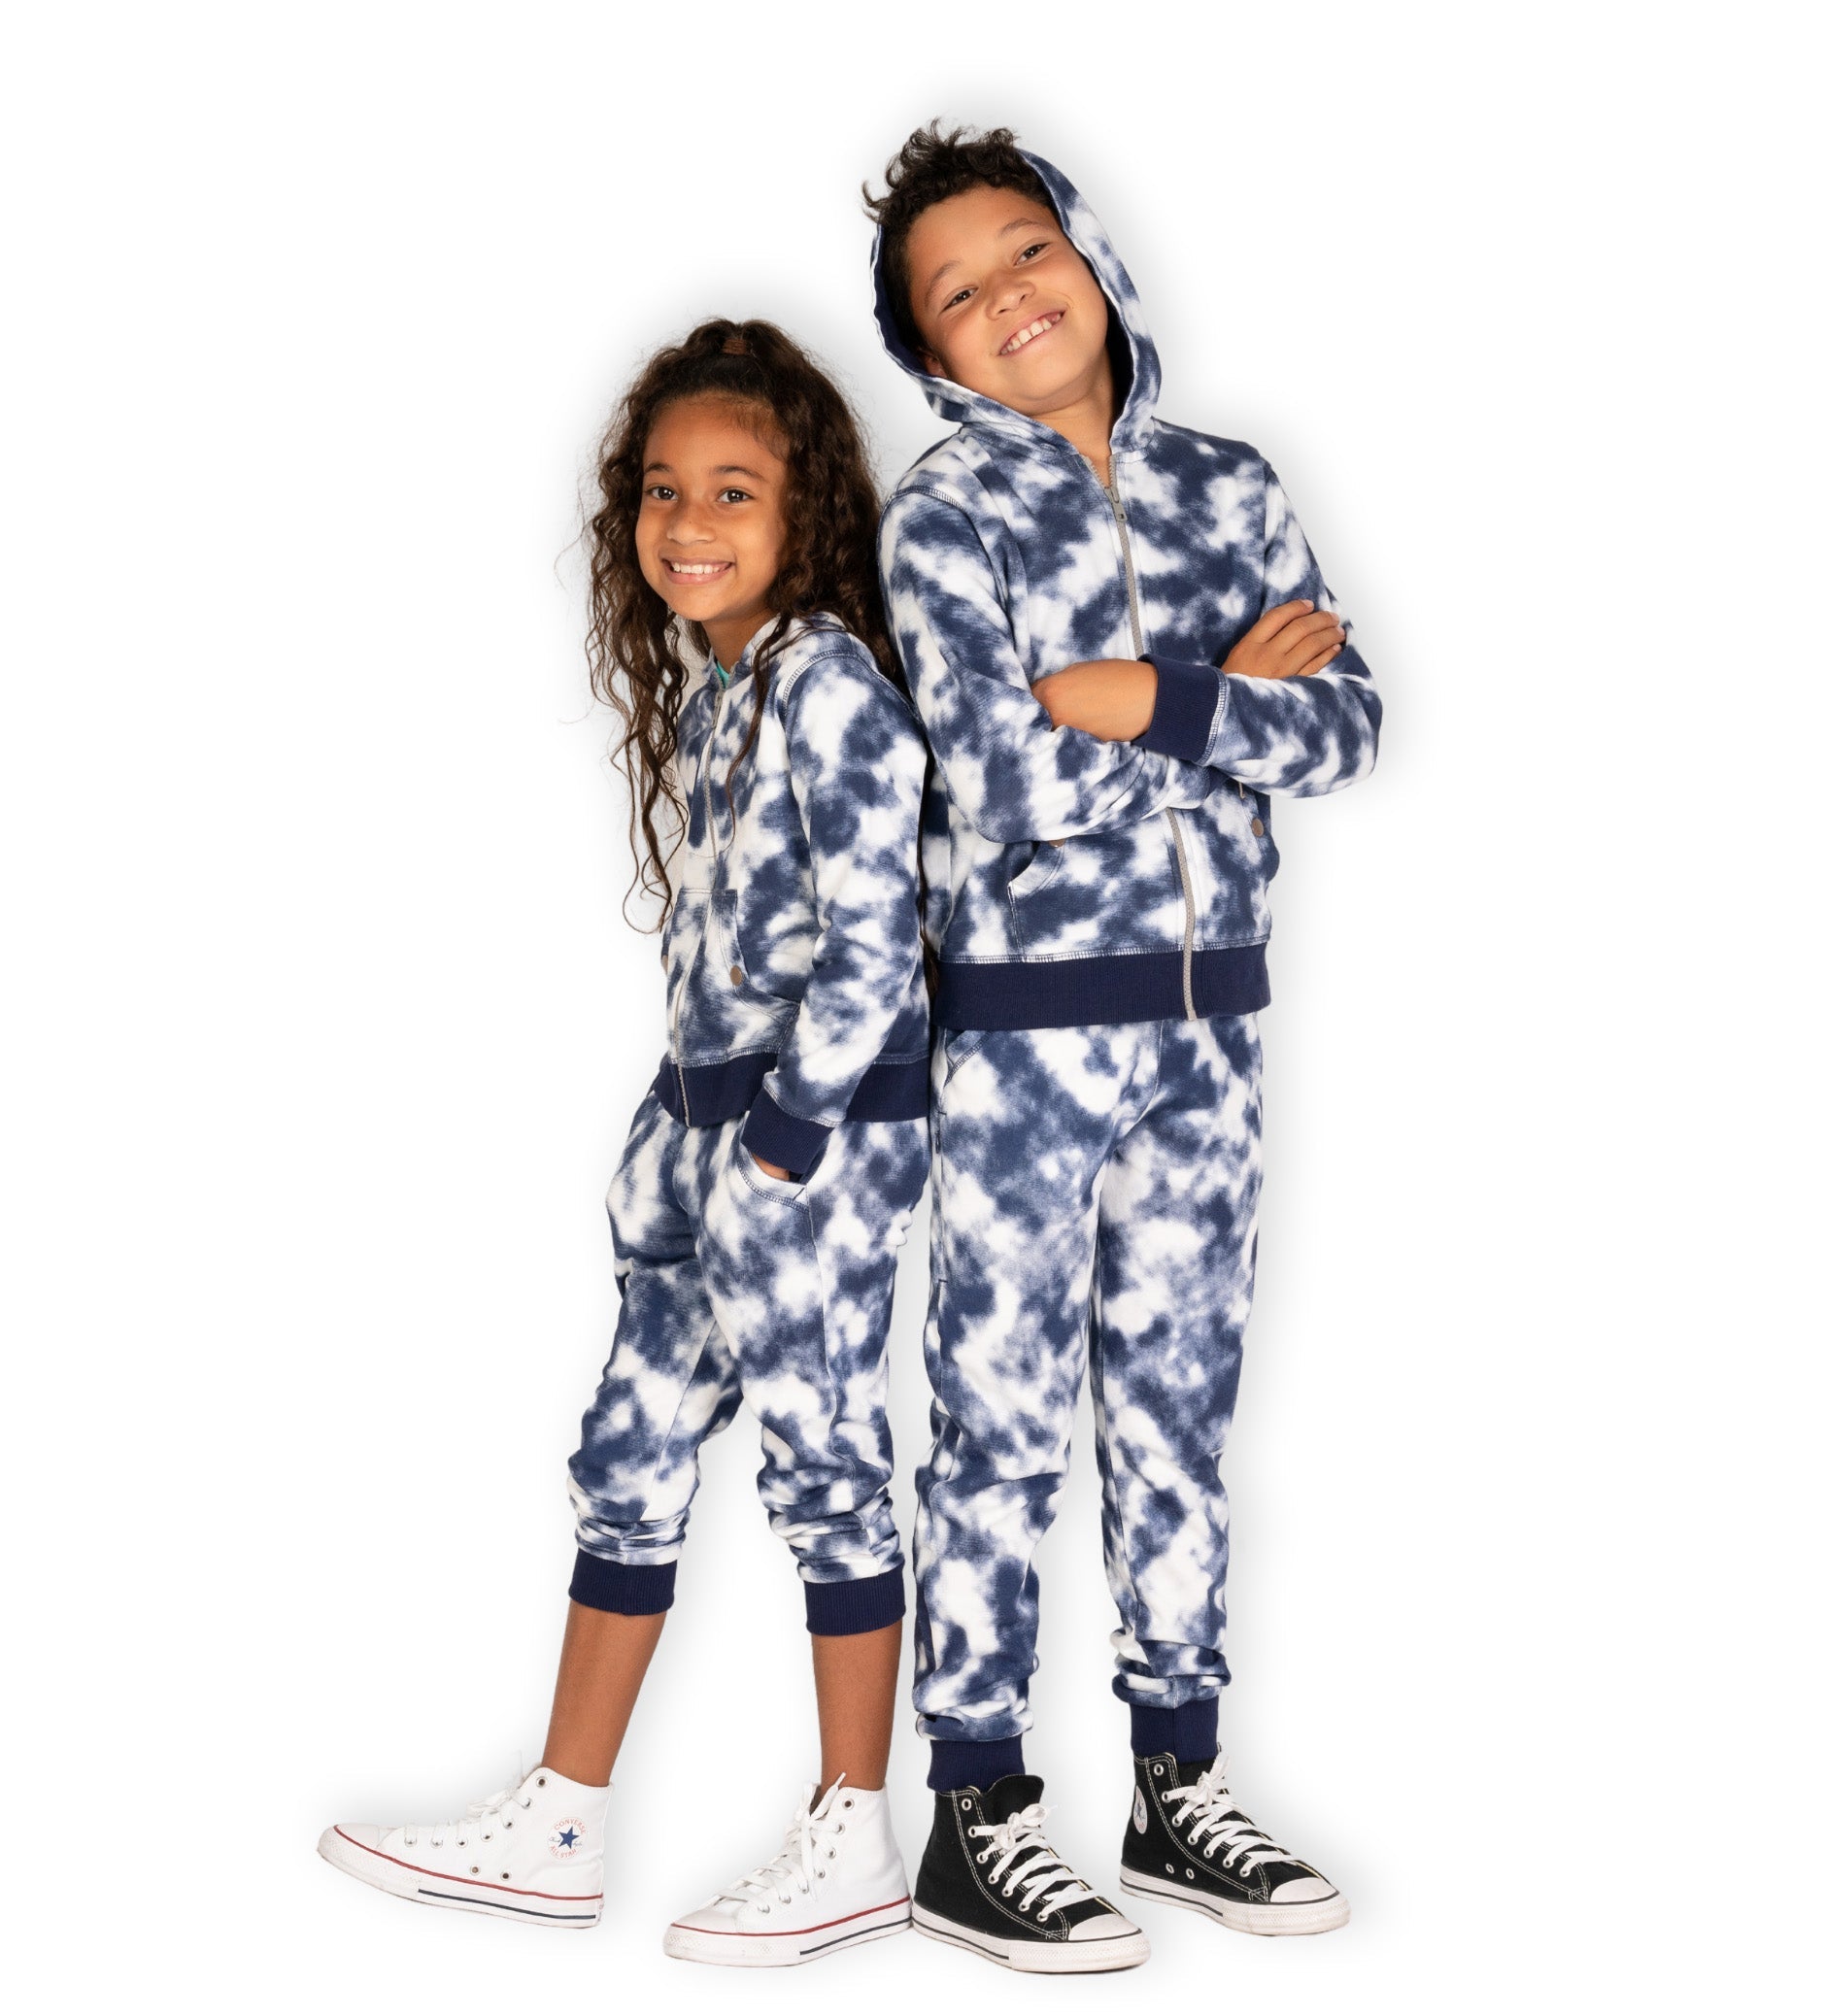 Matching kids’ pants - Boy and girl wearing navy tie-dye jogging pants